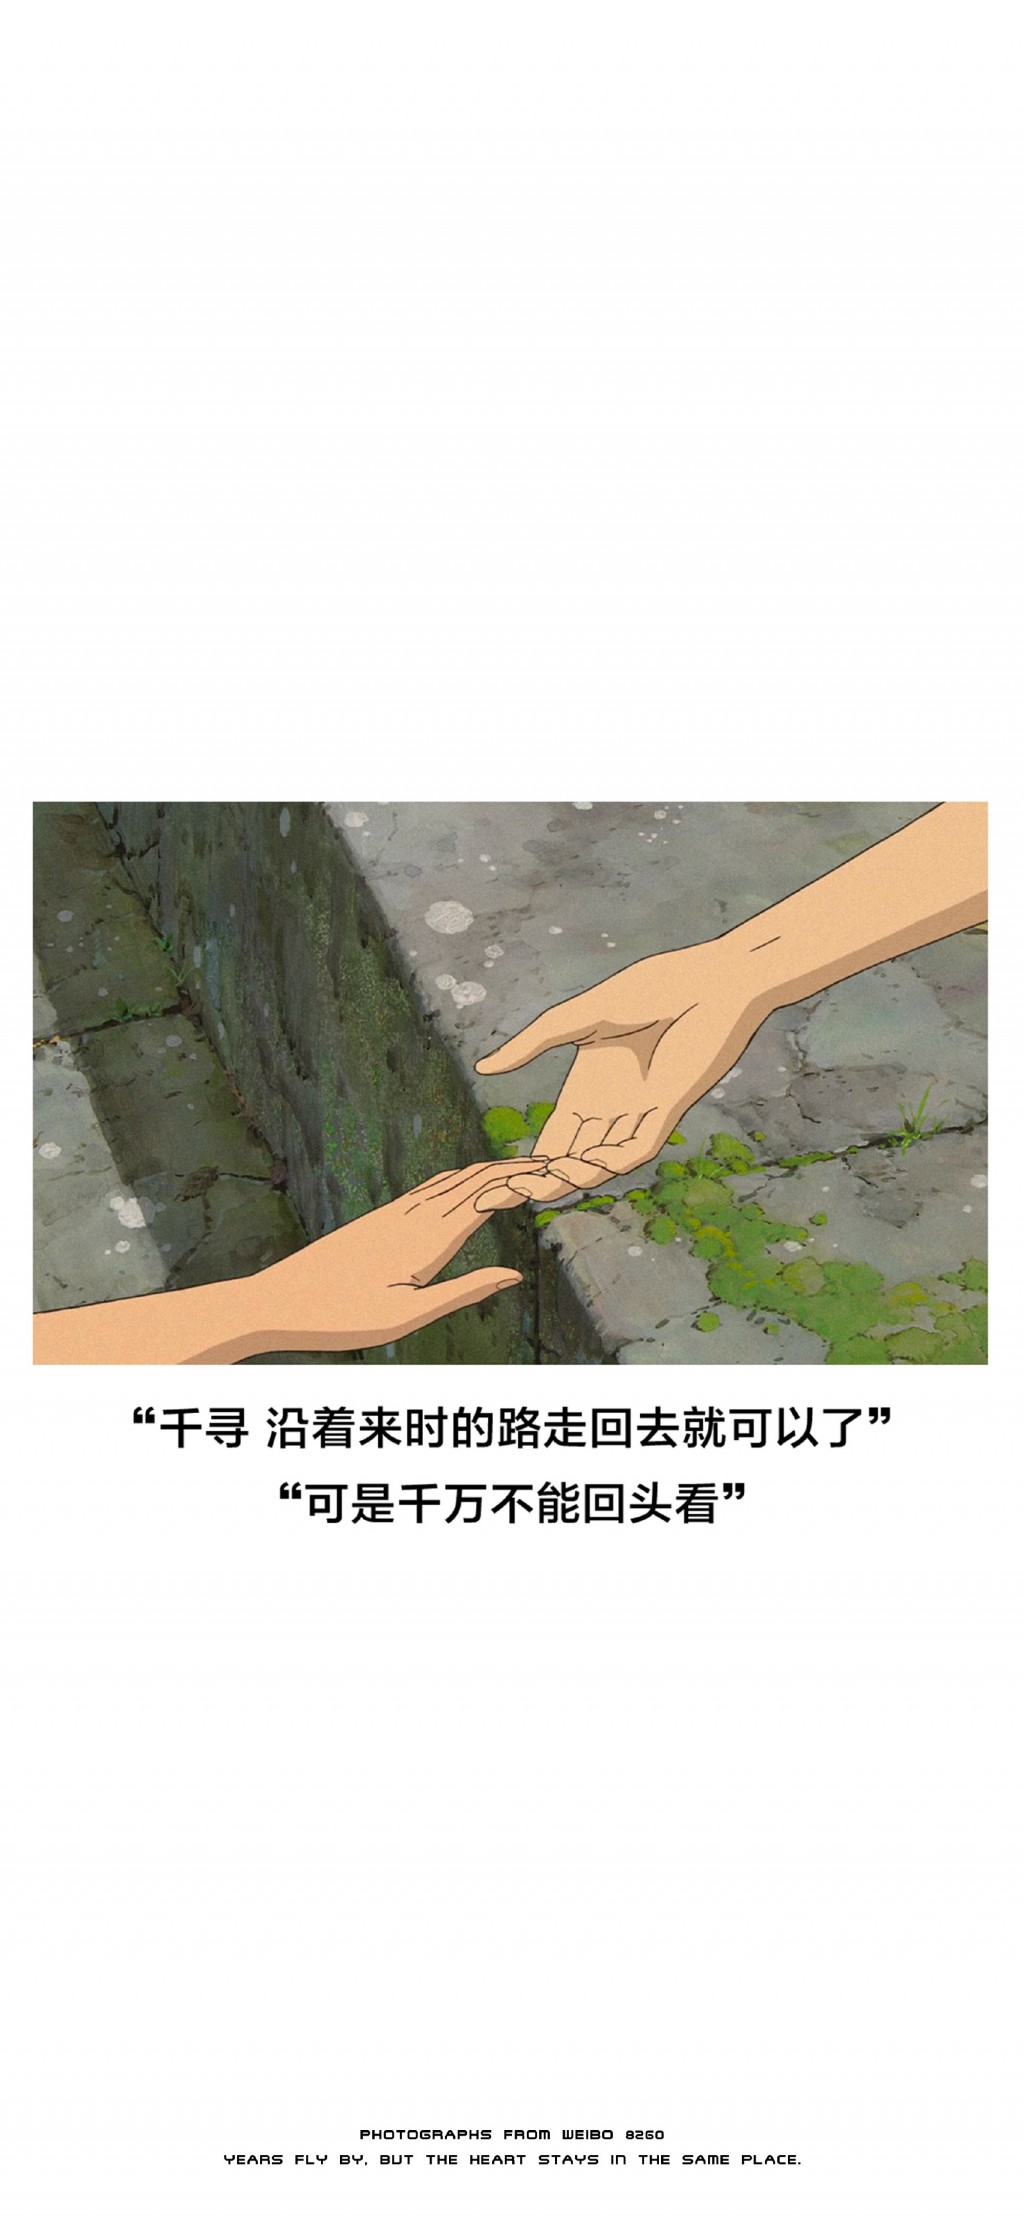 宫崎骏动漫《千与千寻》台词手机壁纸